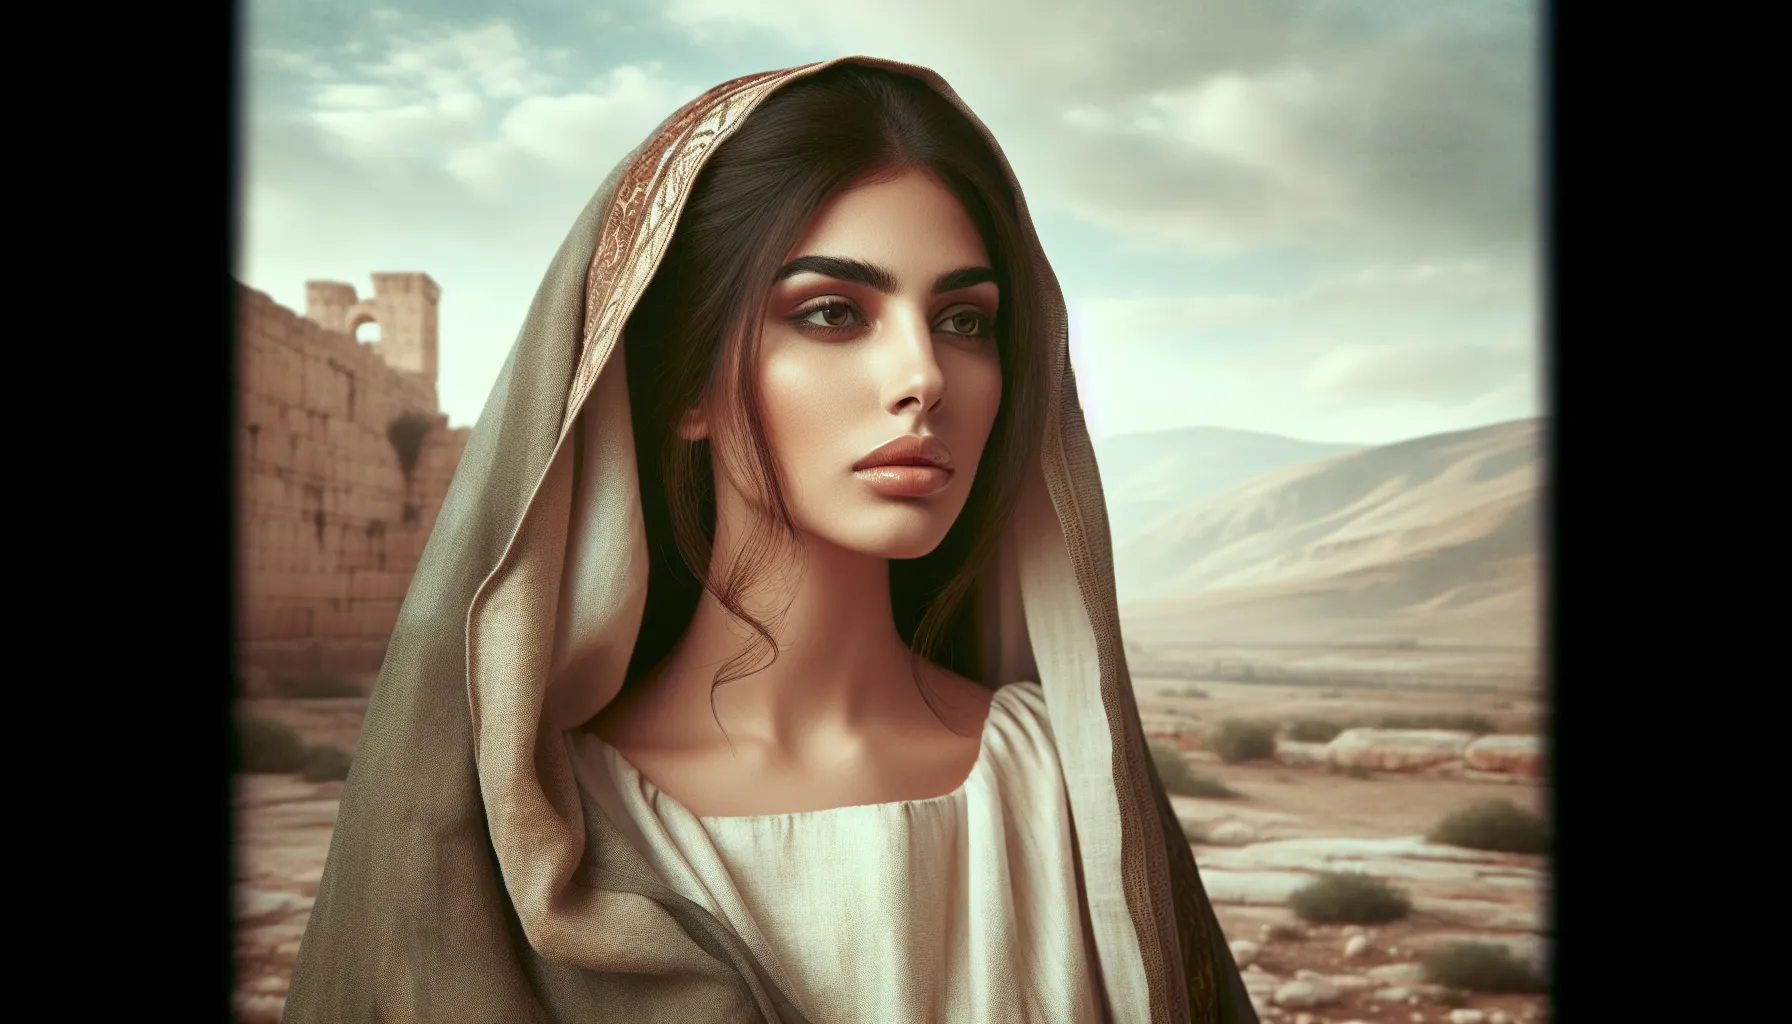 Retrato de María Magdalena con un fondo de paisaje antiguo, simbolizando su importancia histórica y espiritual.